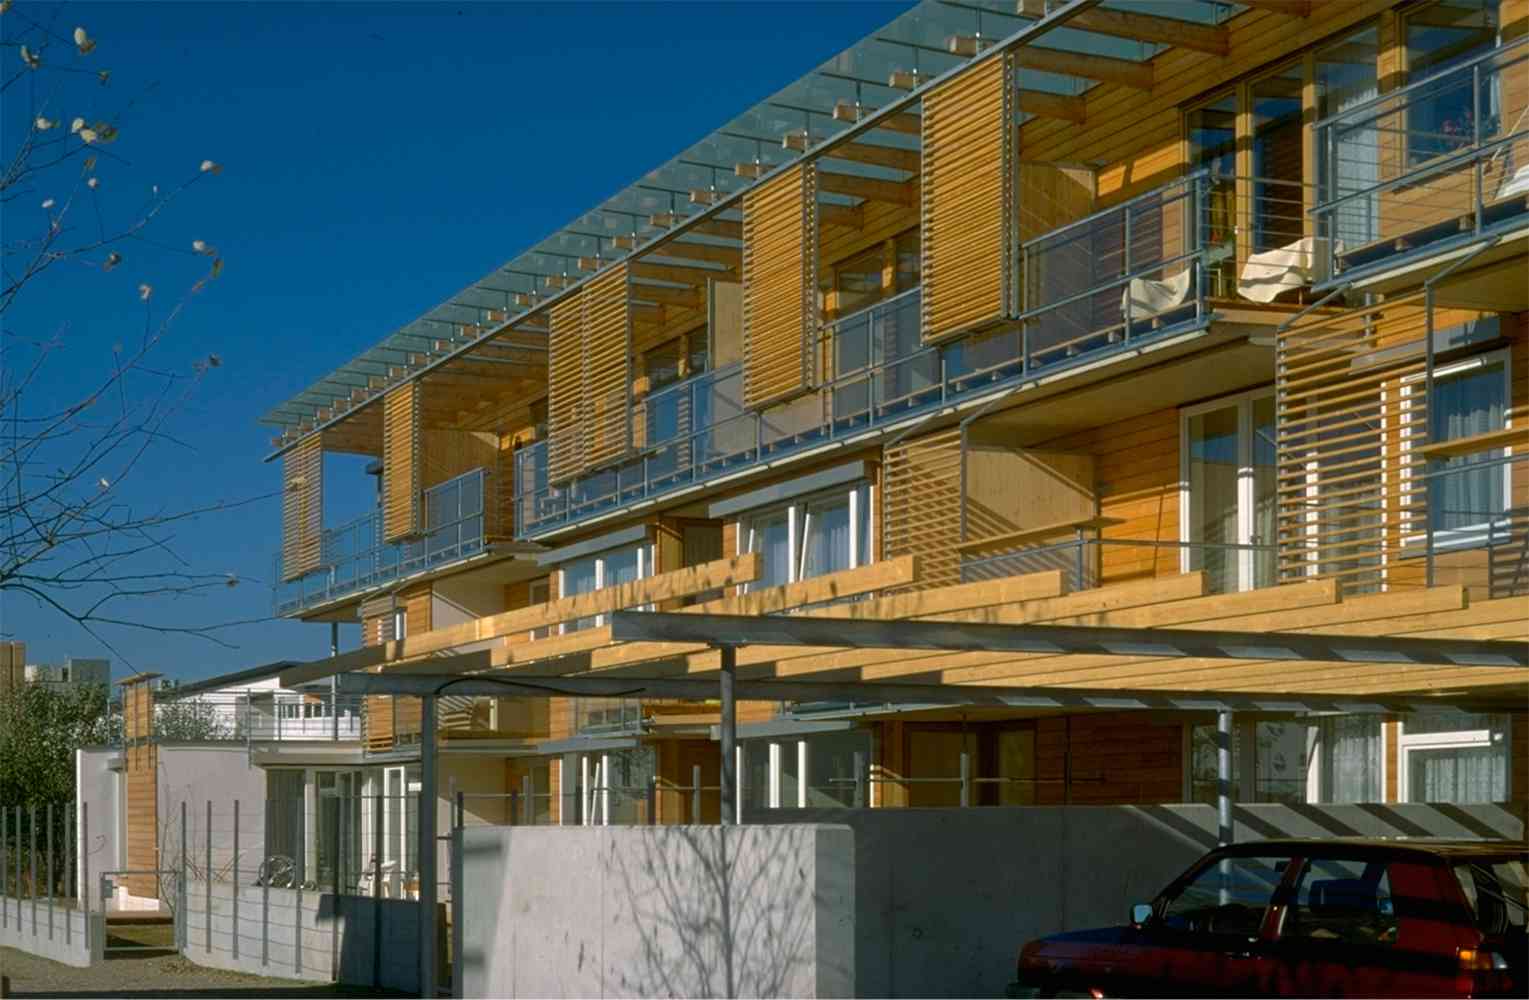 Housing Estate Ingolstadt, Germany - Christoph Lueder, project leader at Behnisch und Partner, Stuttgart